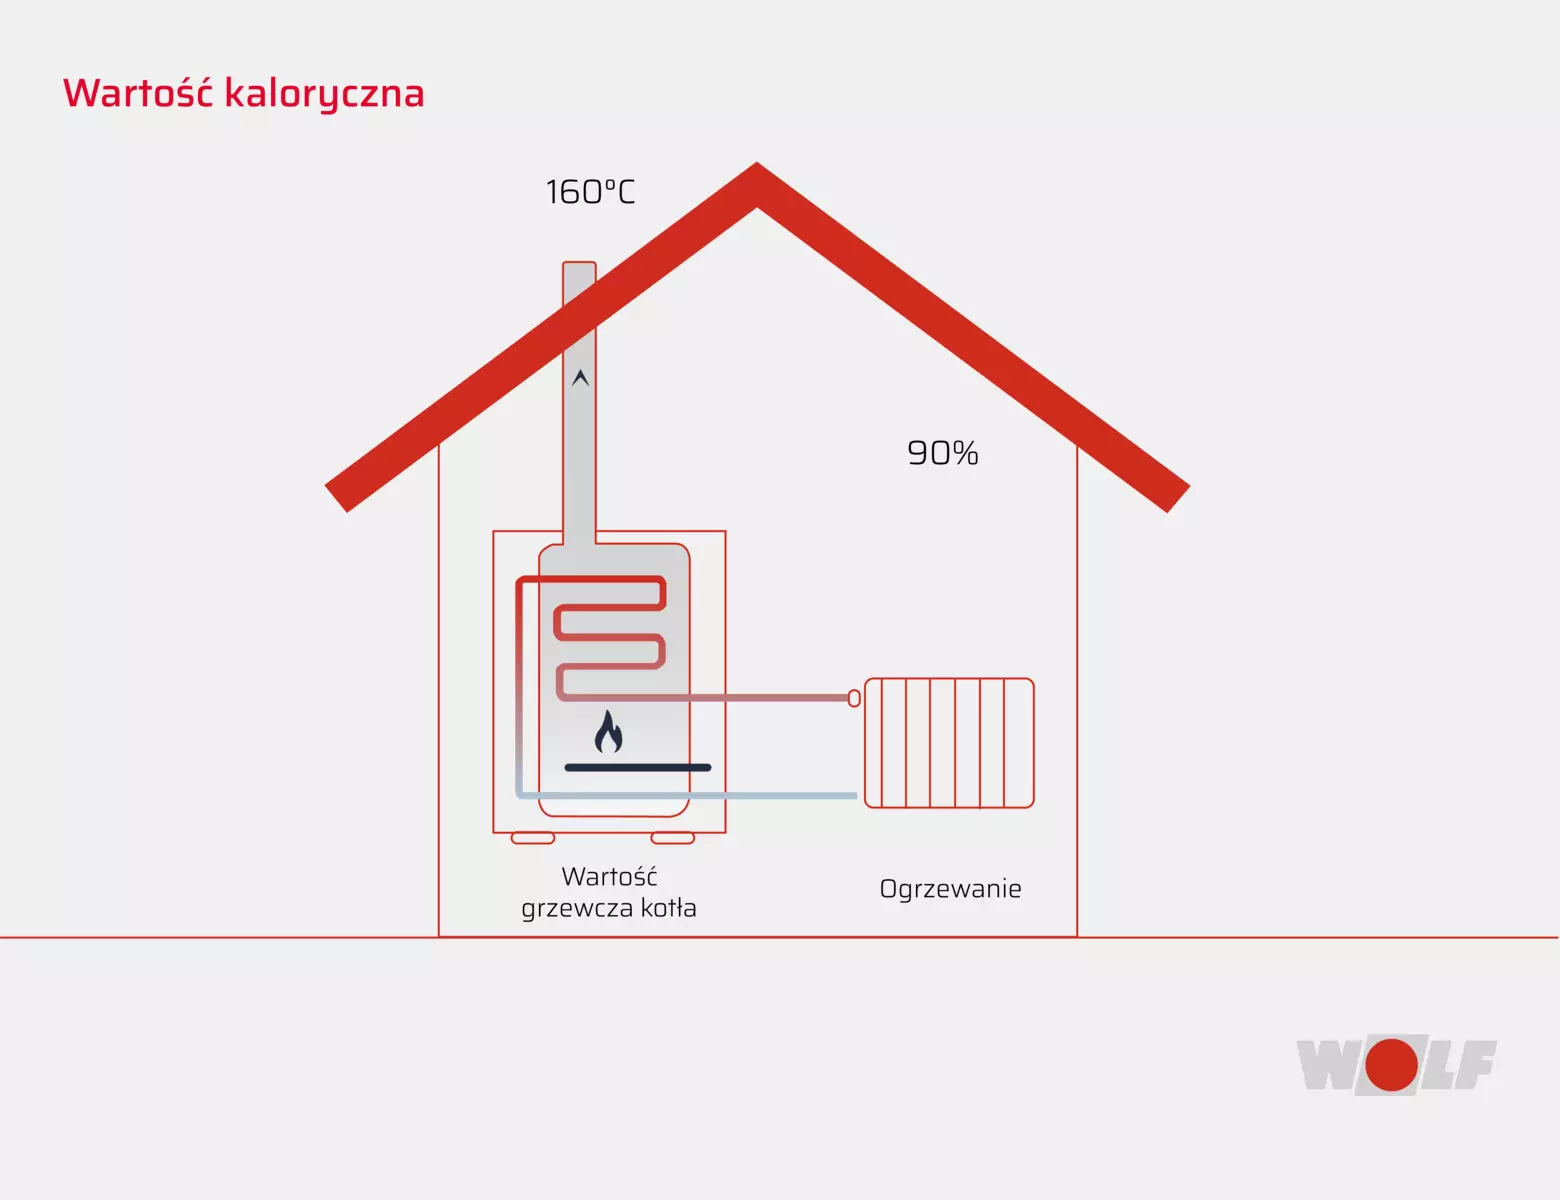 Wartość kaloryczna energii wytwarzanej przez kocioł grzewczy na przykładzie budynku mieszkalnego